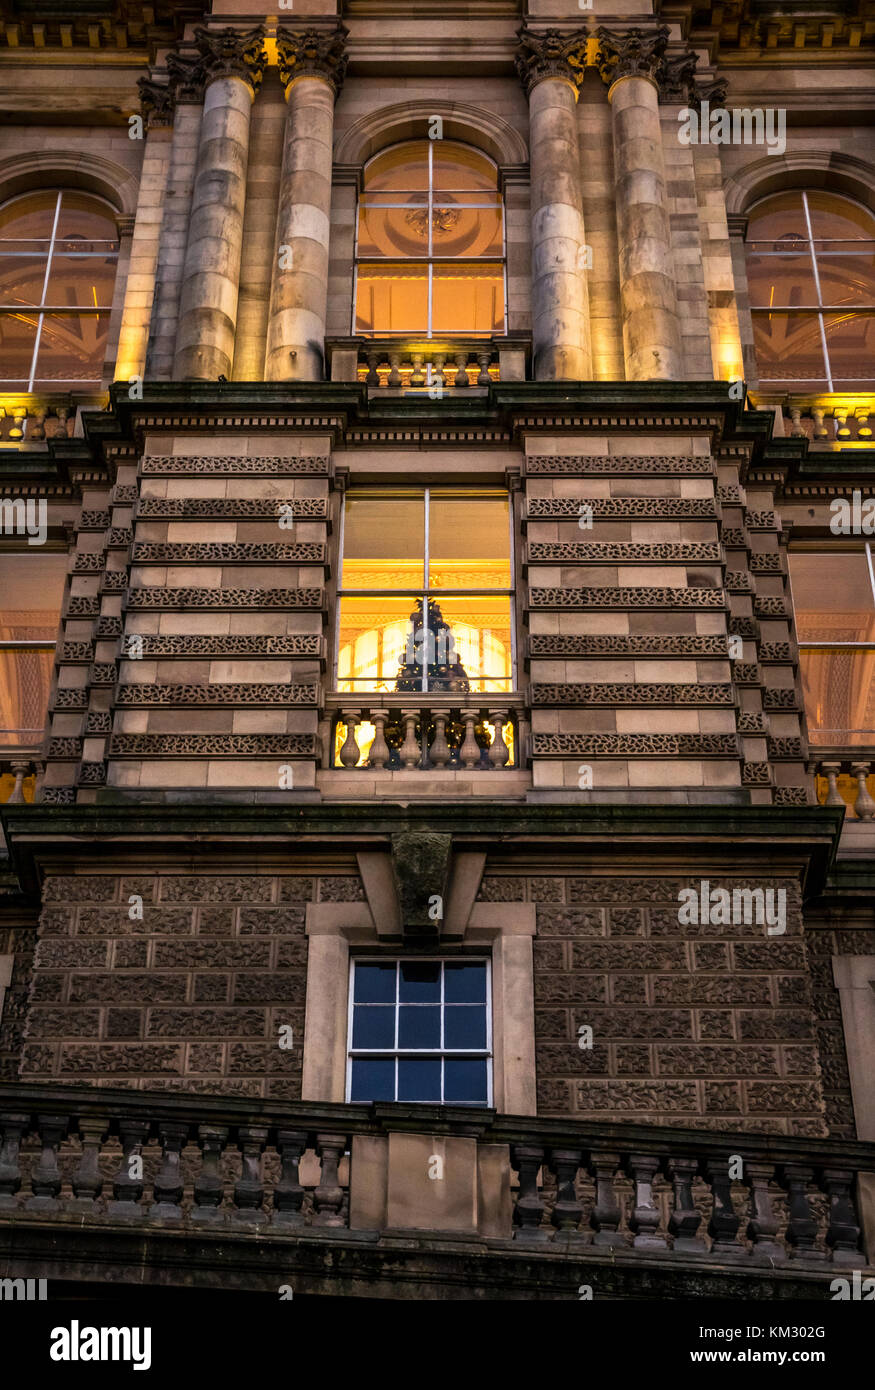 Cerca del edificio victoriano, sede del Bank of Scotland, el montículo, iluminado al anochecer con un árbol de Navidad en la ventana, Edimburgo, Escocia, Reino Unido Foto de stock